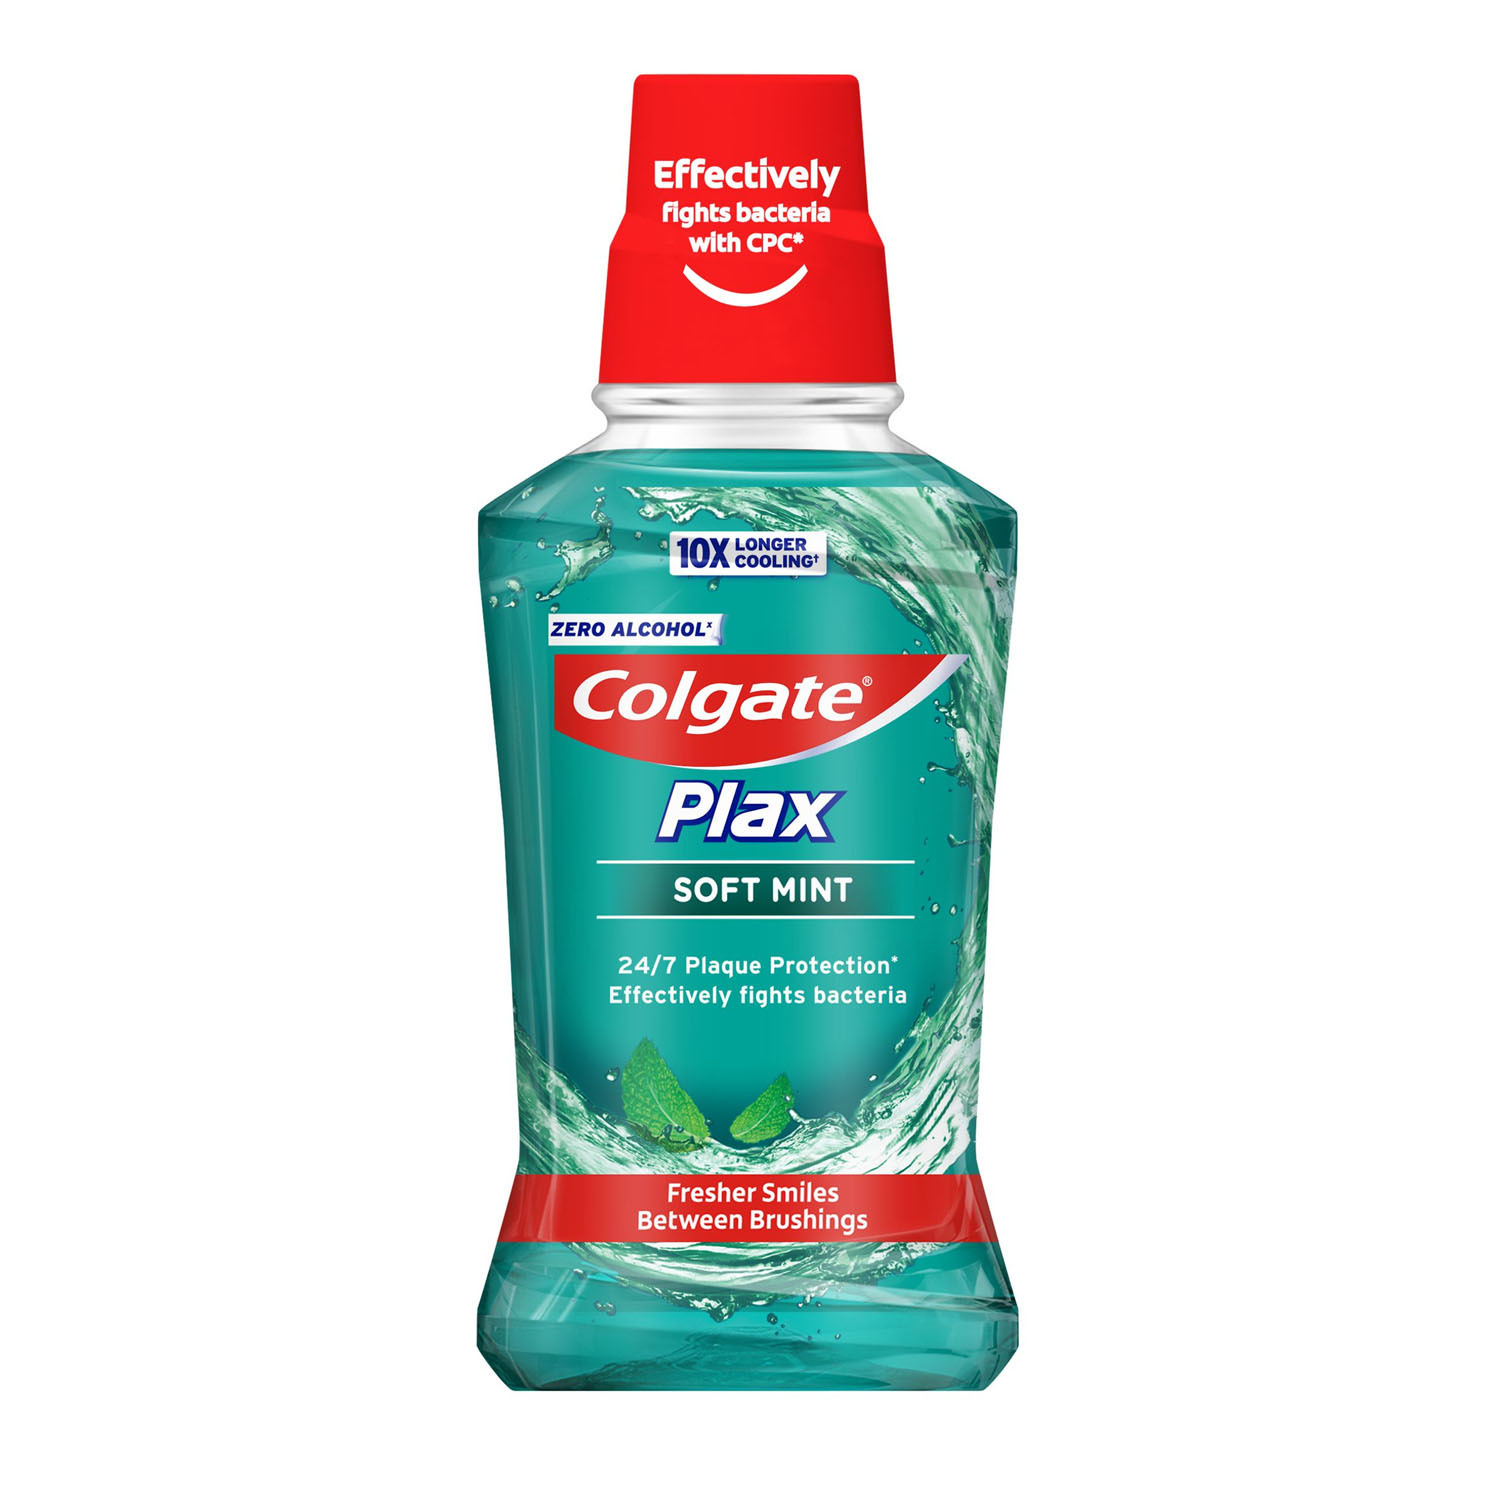 Colgate Plax Soft Mint Mouthwash Image 1